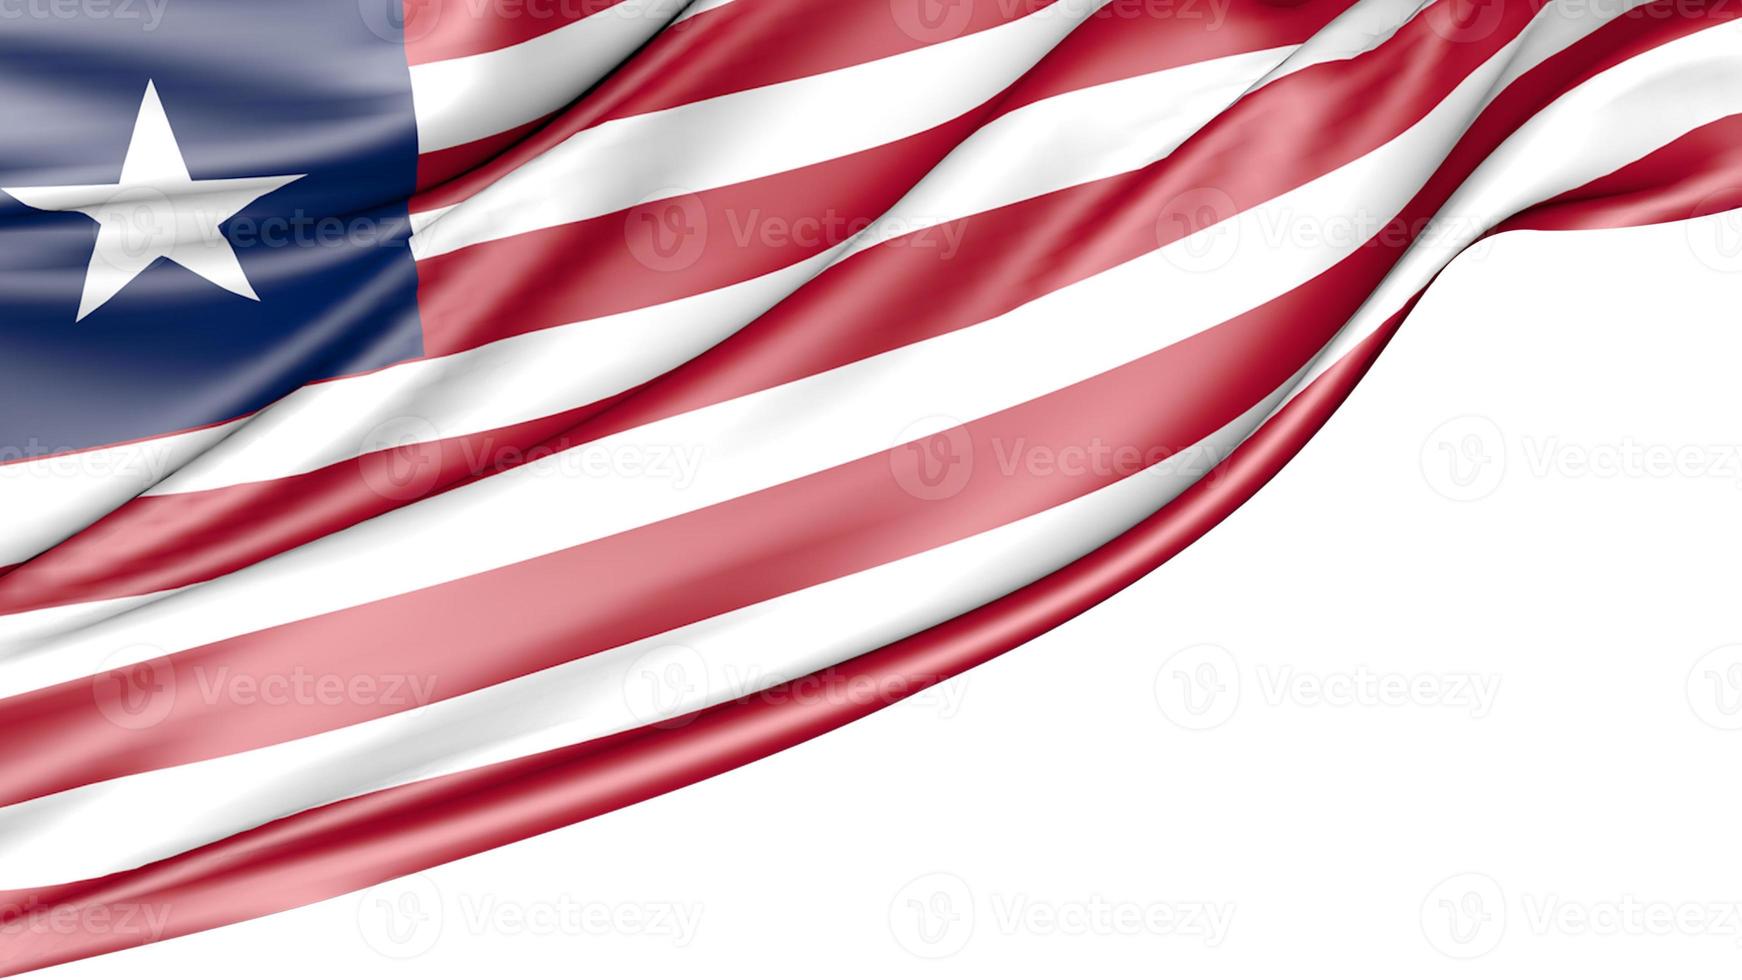 Liberia Flag Isolated on White Background, 3D Illustration photo